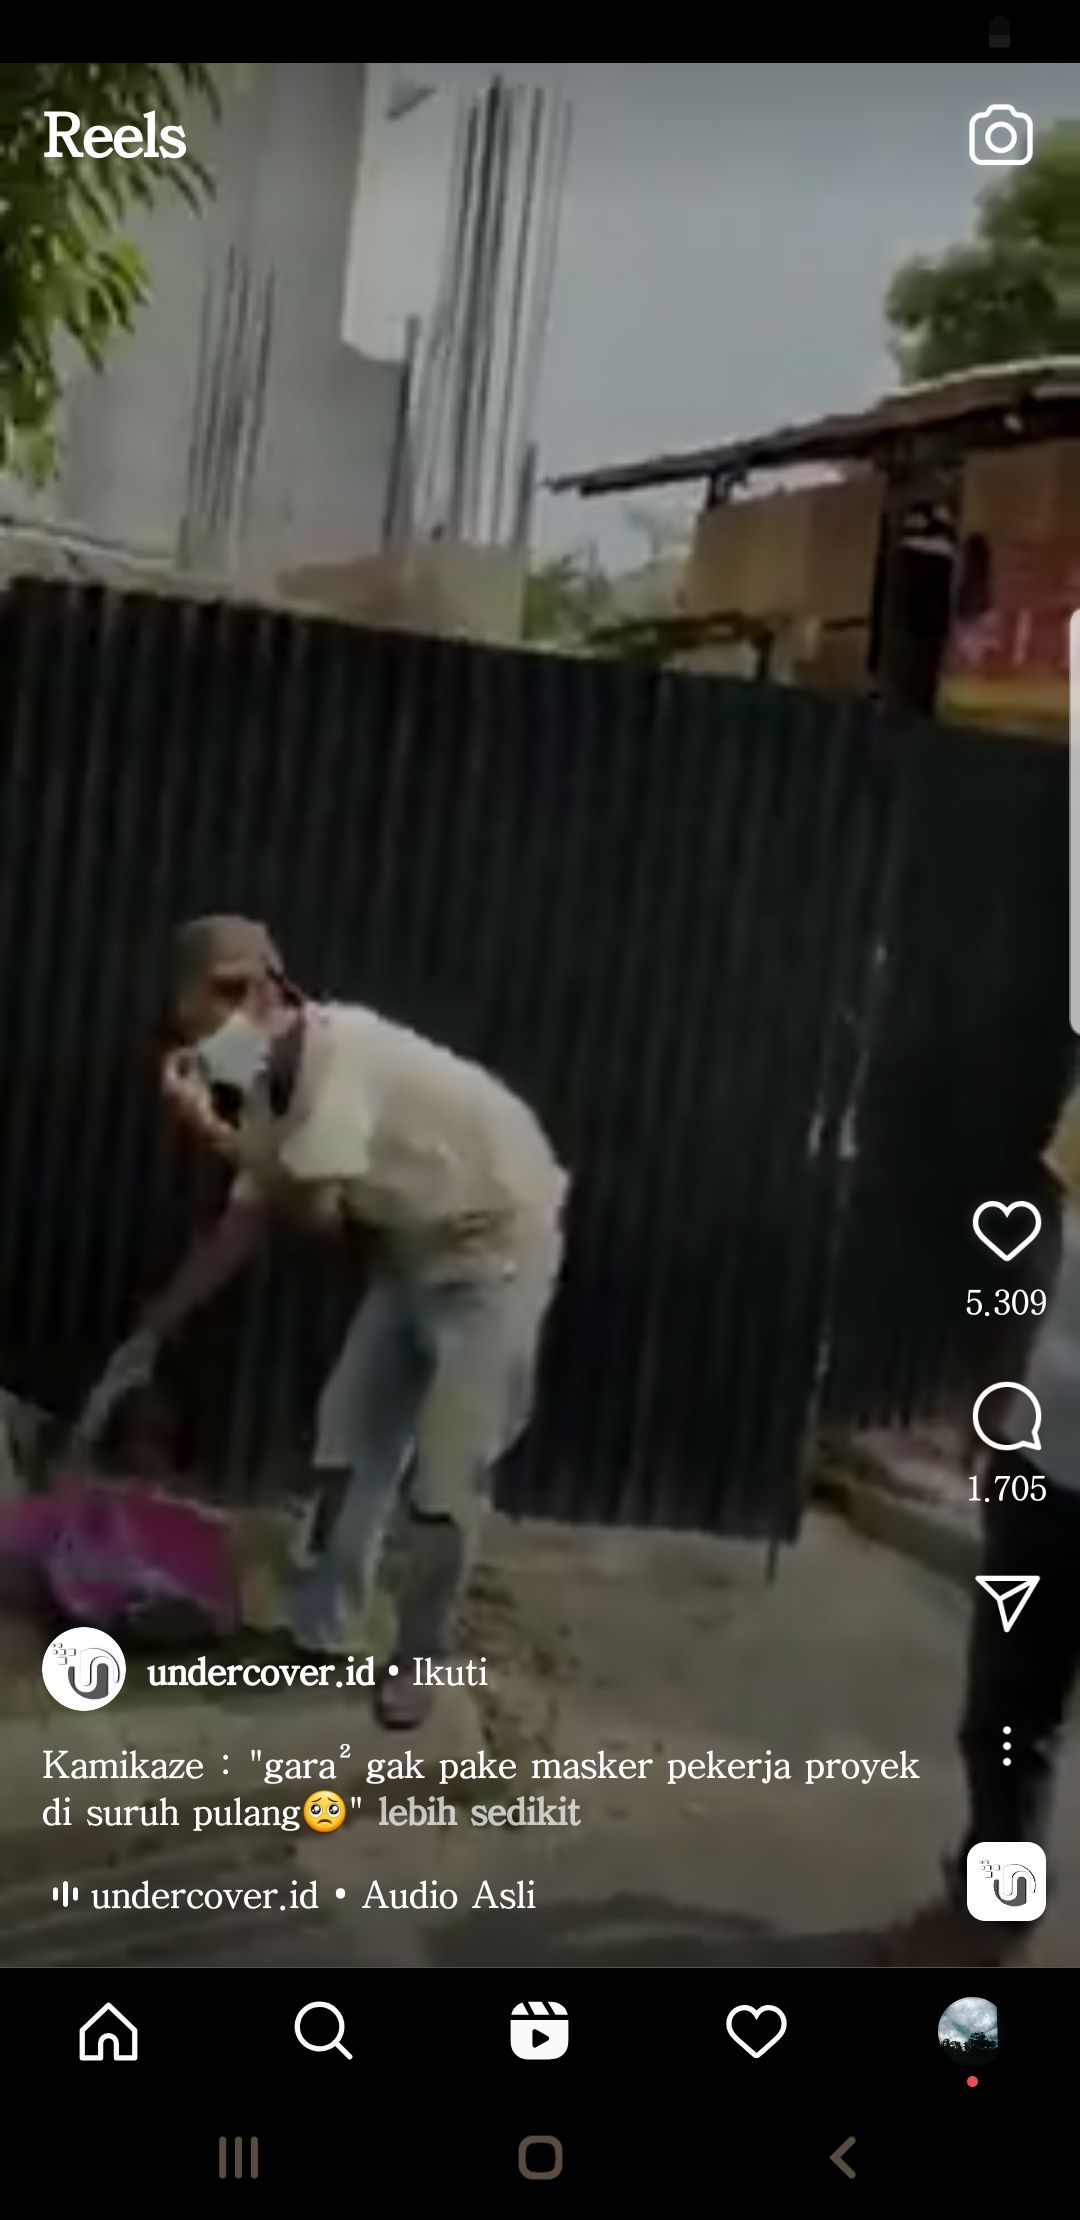 Video seorang tukang bangunan disuruh pulang karena tidak memakai masker.